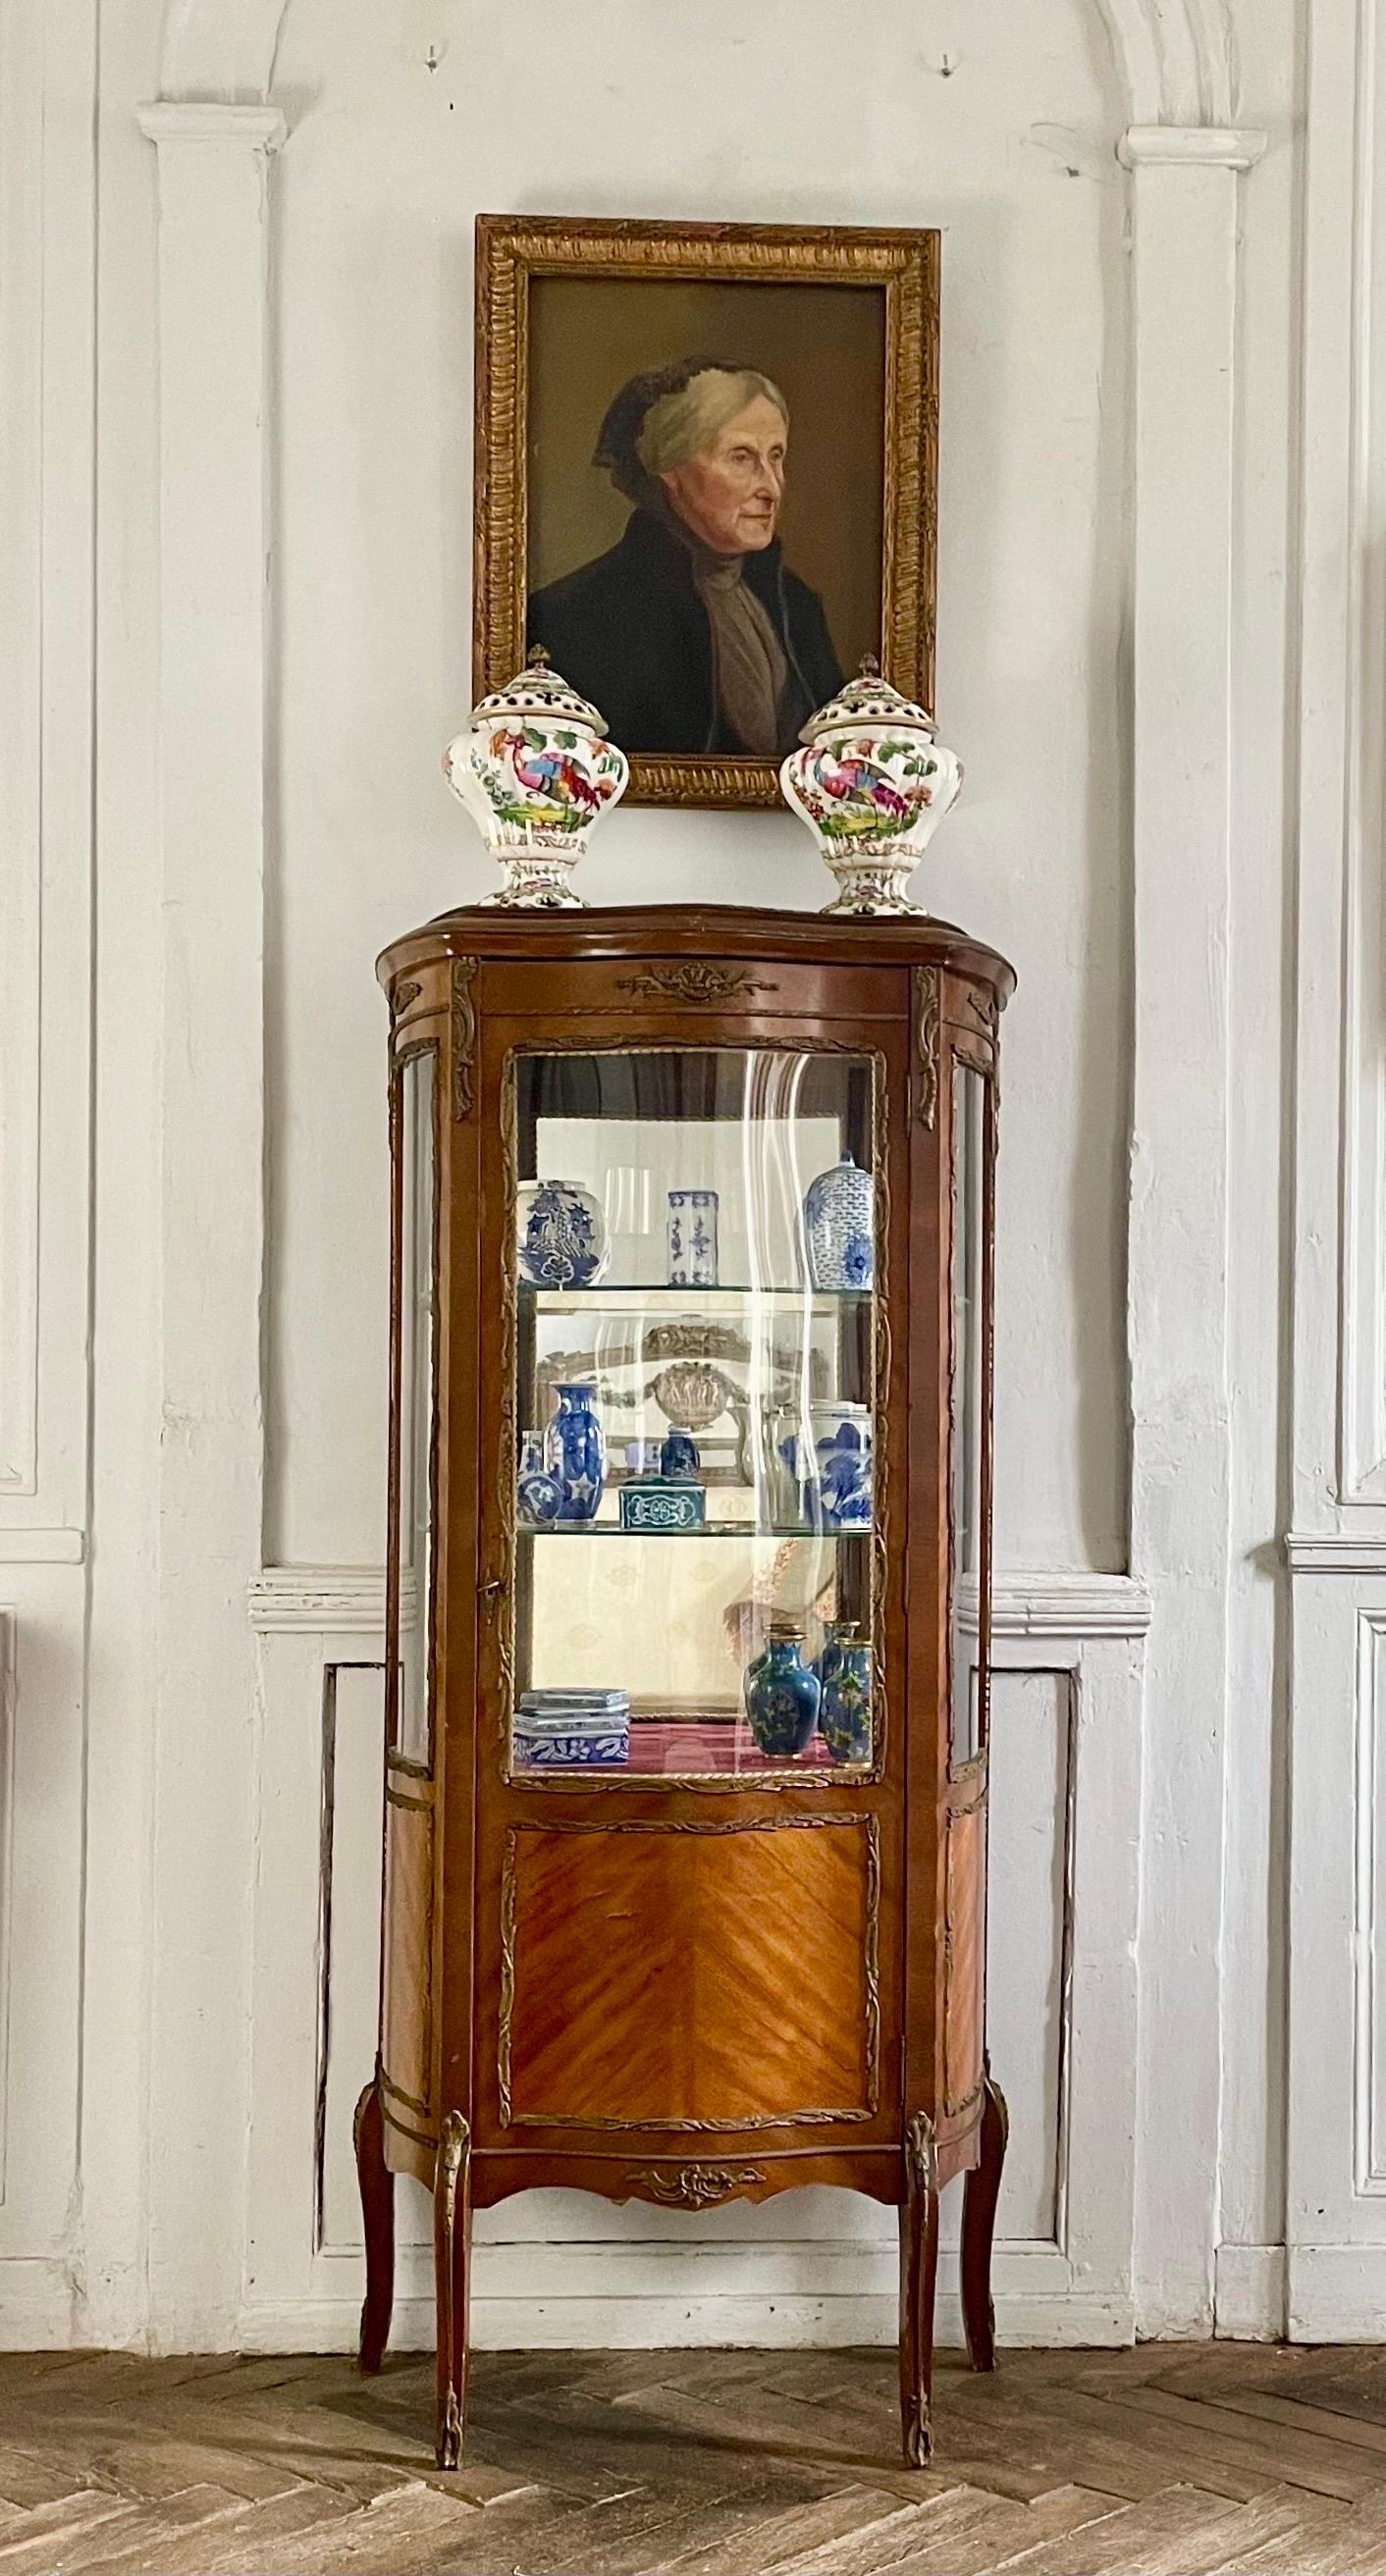 Magnifique vitrine à miroir en placage d'acajou marqueté de style Louis XV - époque Napoléon III - 19ème siècle.
Vitrine de charme aux dimensions idéales pour un bureau, une chambre, un salon, une entrée ou une galerie.
Meubles français élégants.